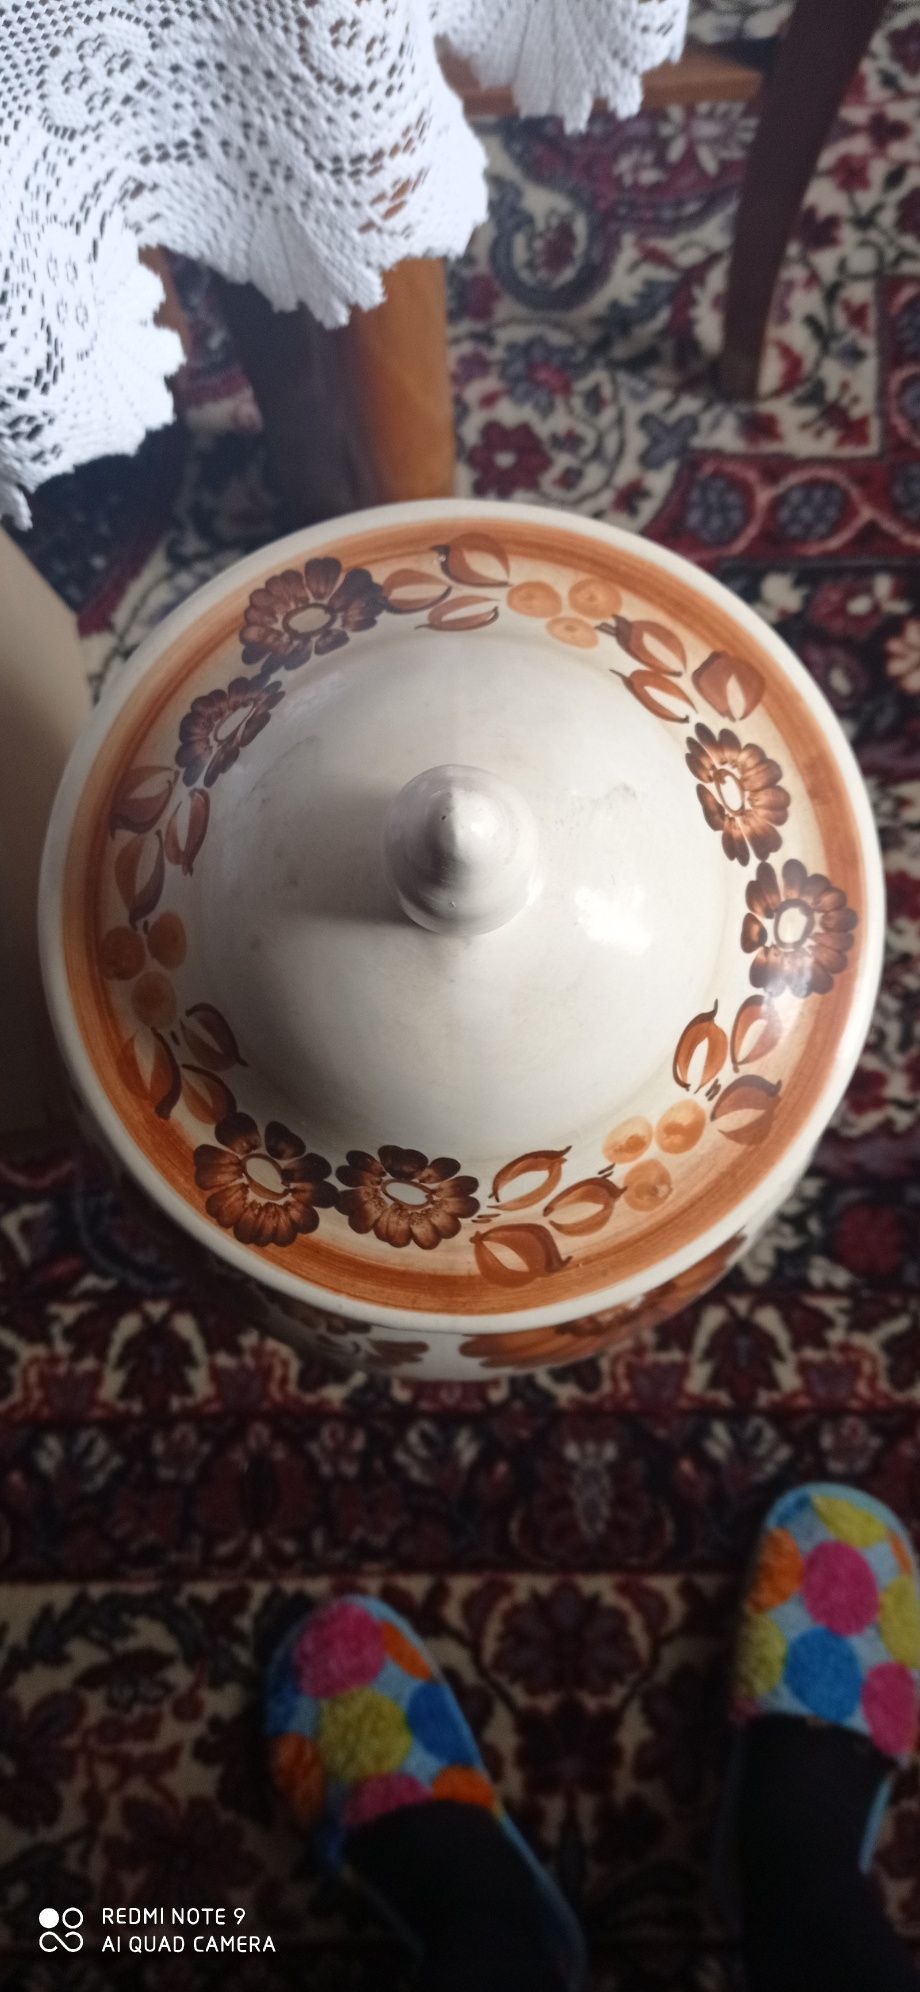 Waza ceramiczna z serii Włocławek duża ok 75 cm